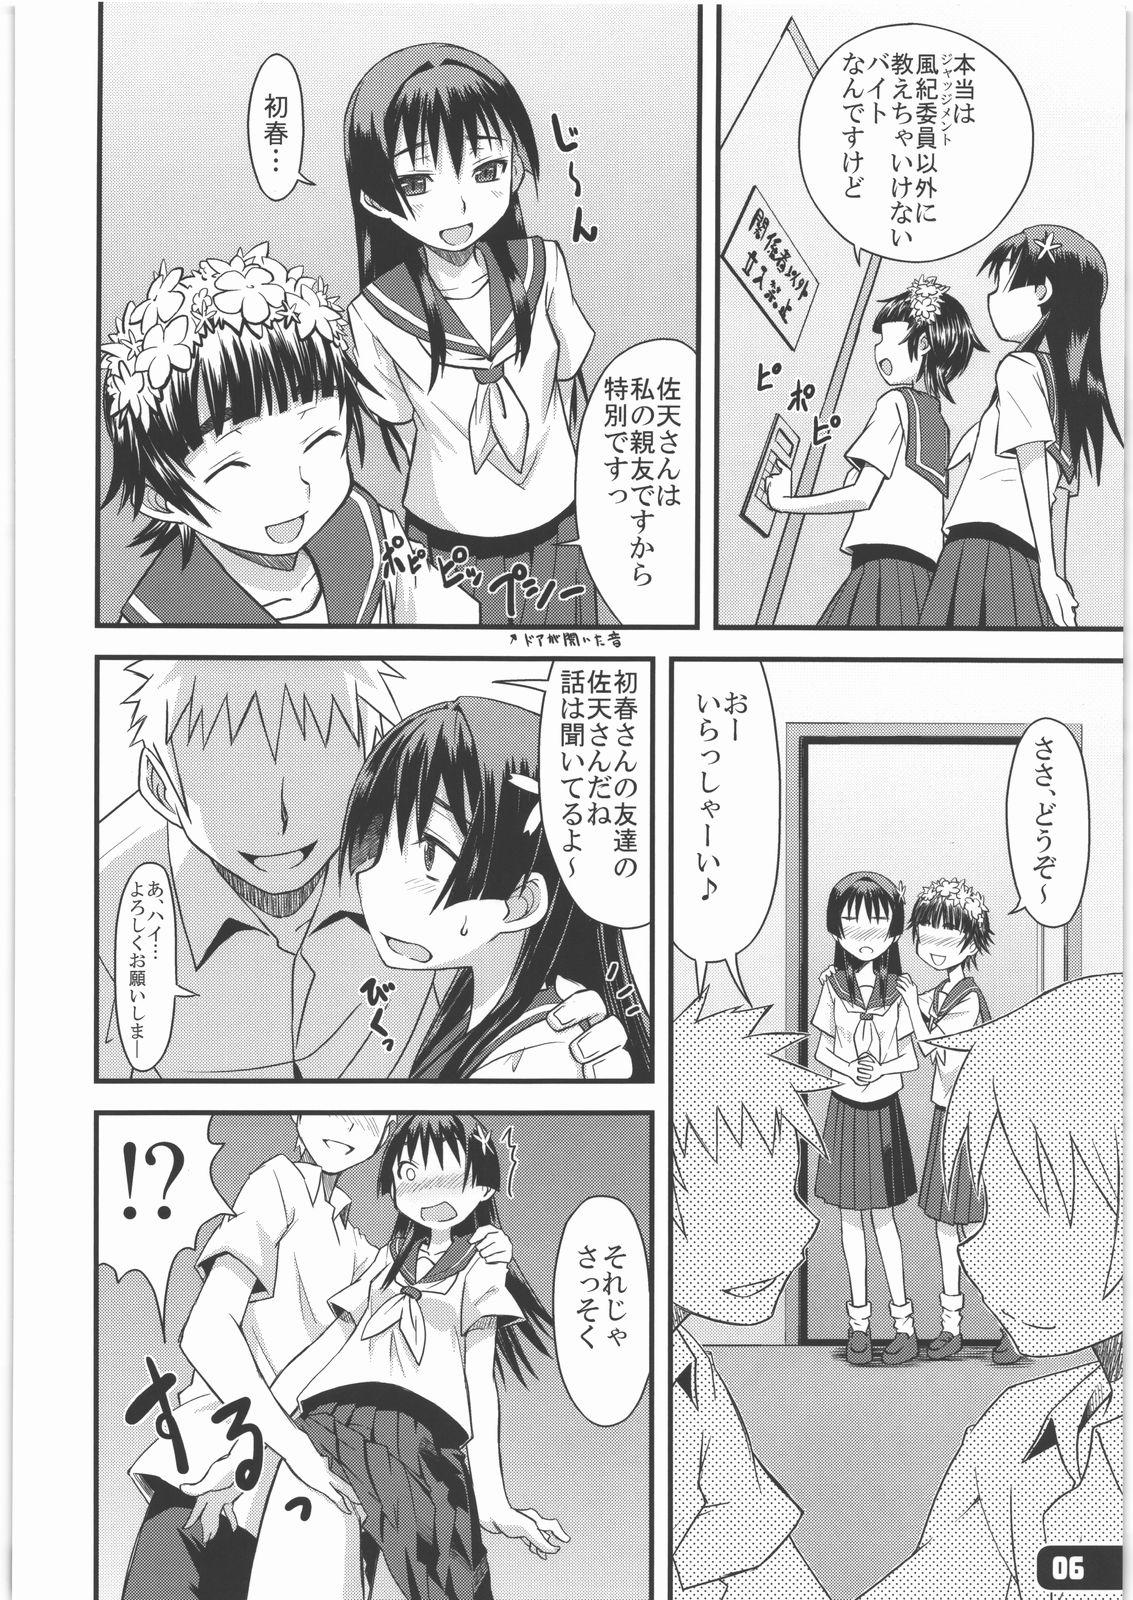 No Condom Flower Girls - Toaru kagaku no railgun Chicks - Page 5